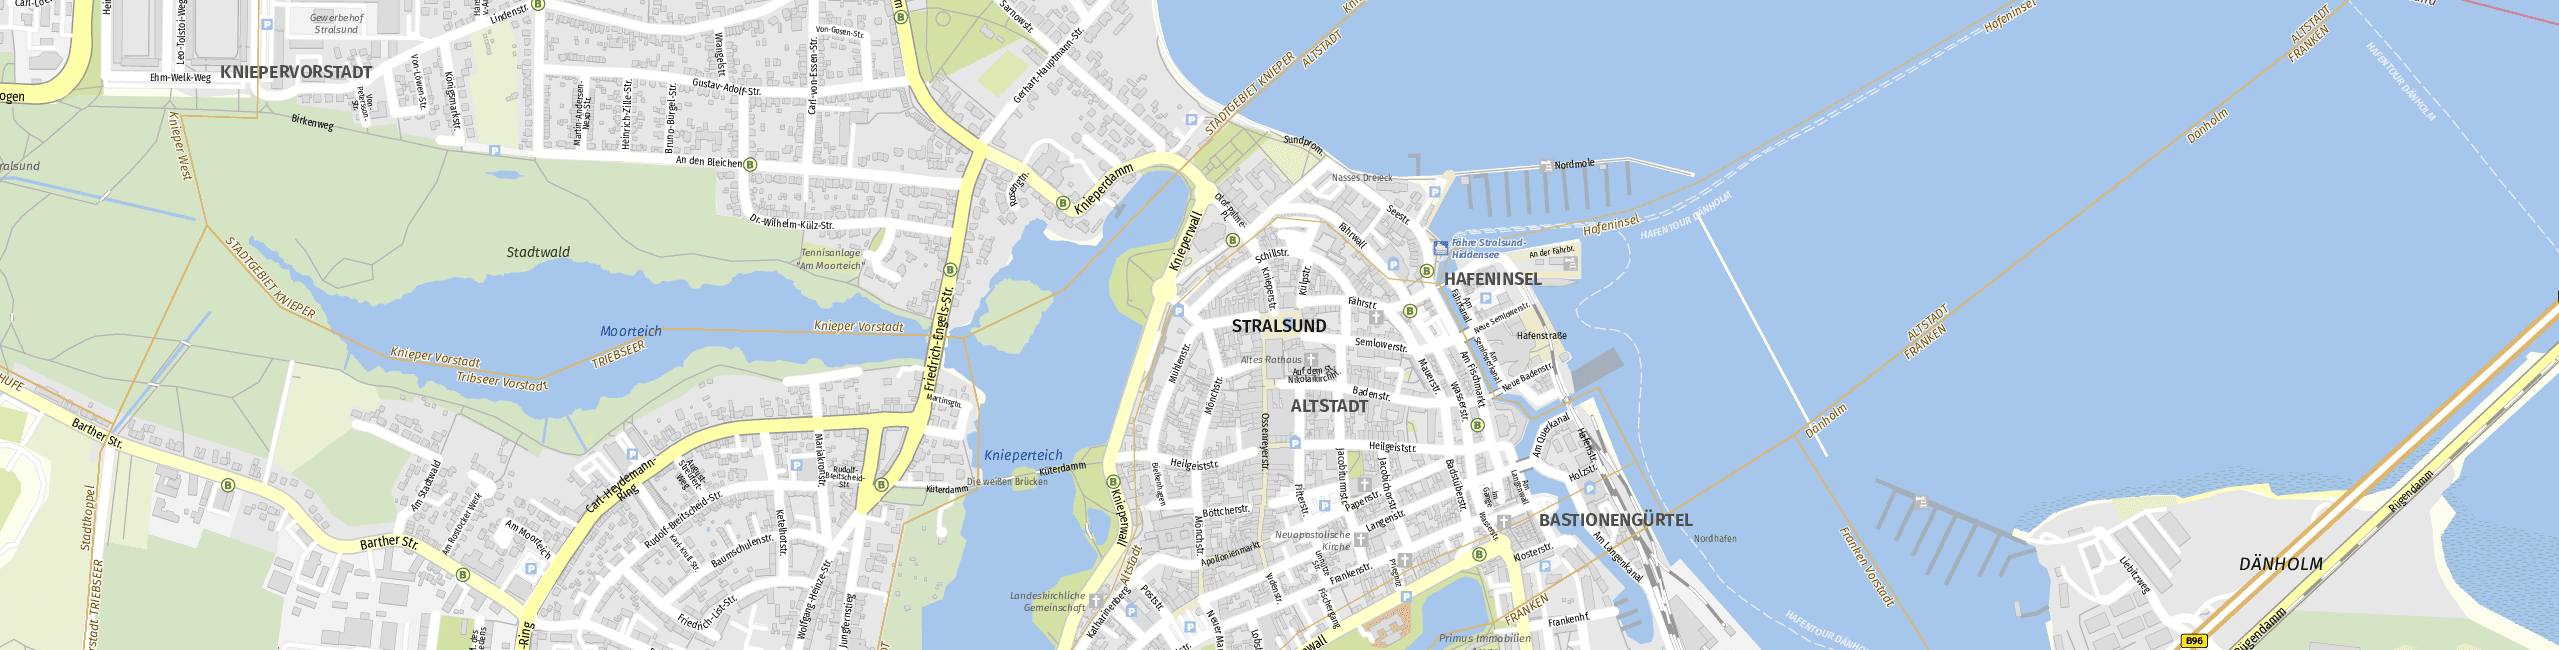 Stadtplan Stralsund zum Downloaden.